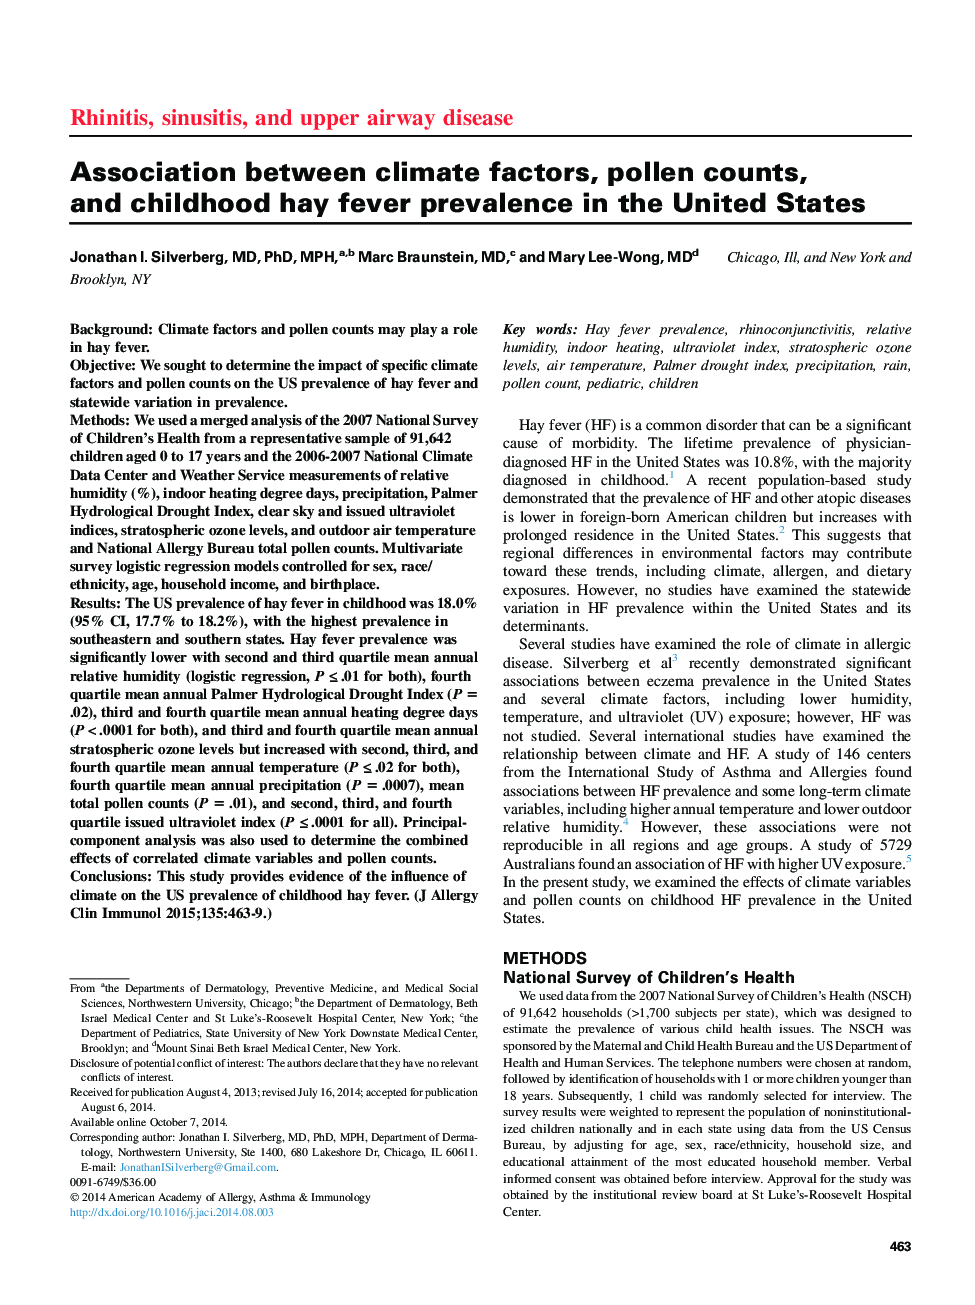 ارتباط بین عوامل آب و هوایی، تعداد گرده، و شیوع تب یونجه در دوران کودکی در ایالات متحده 